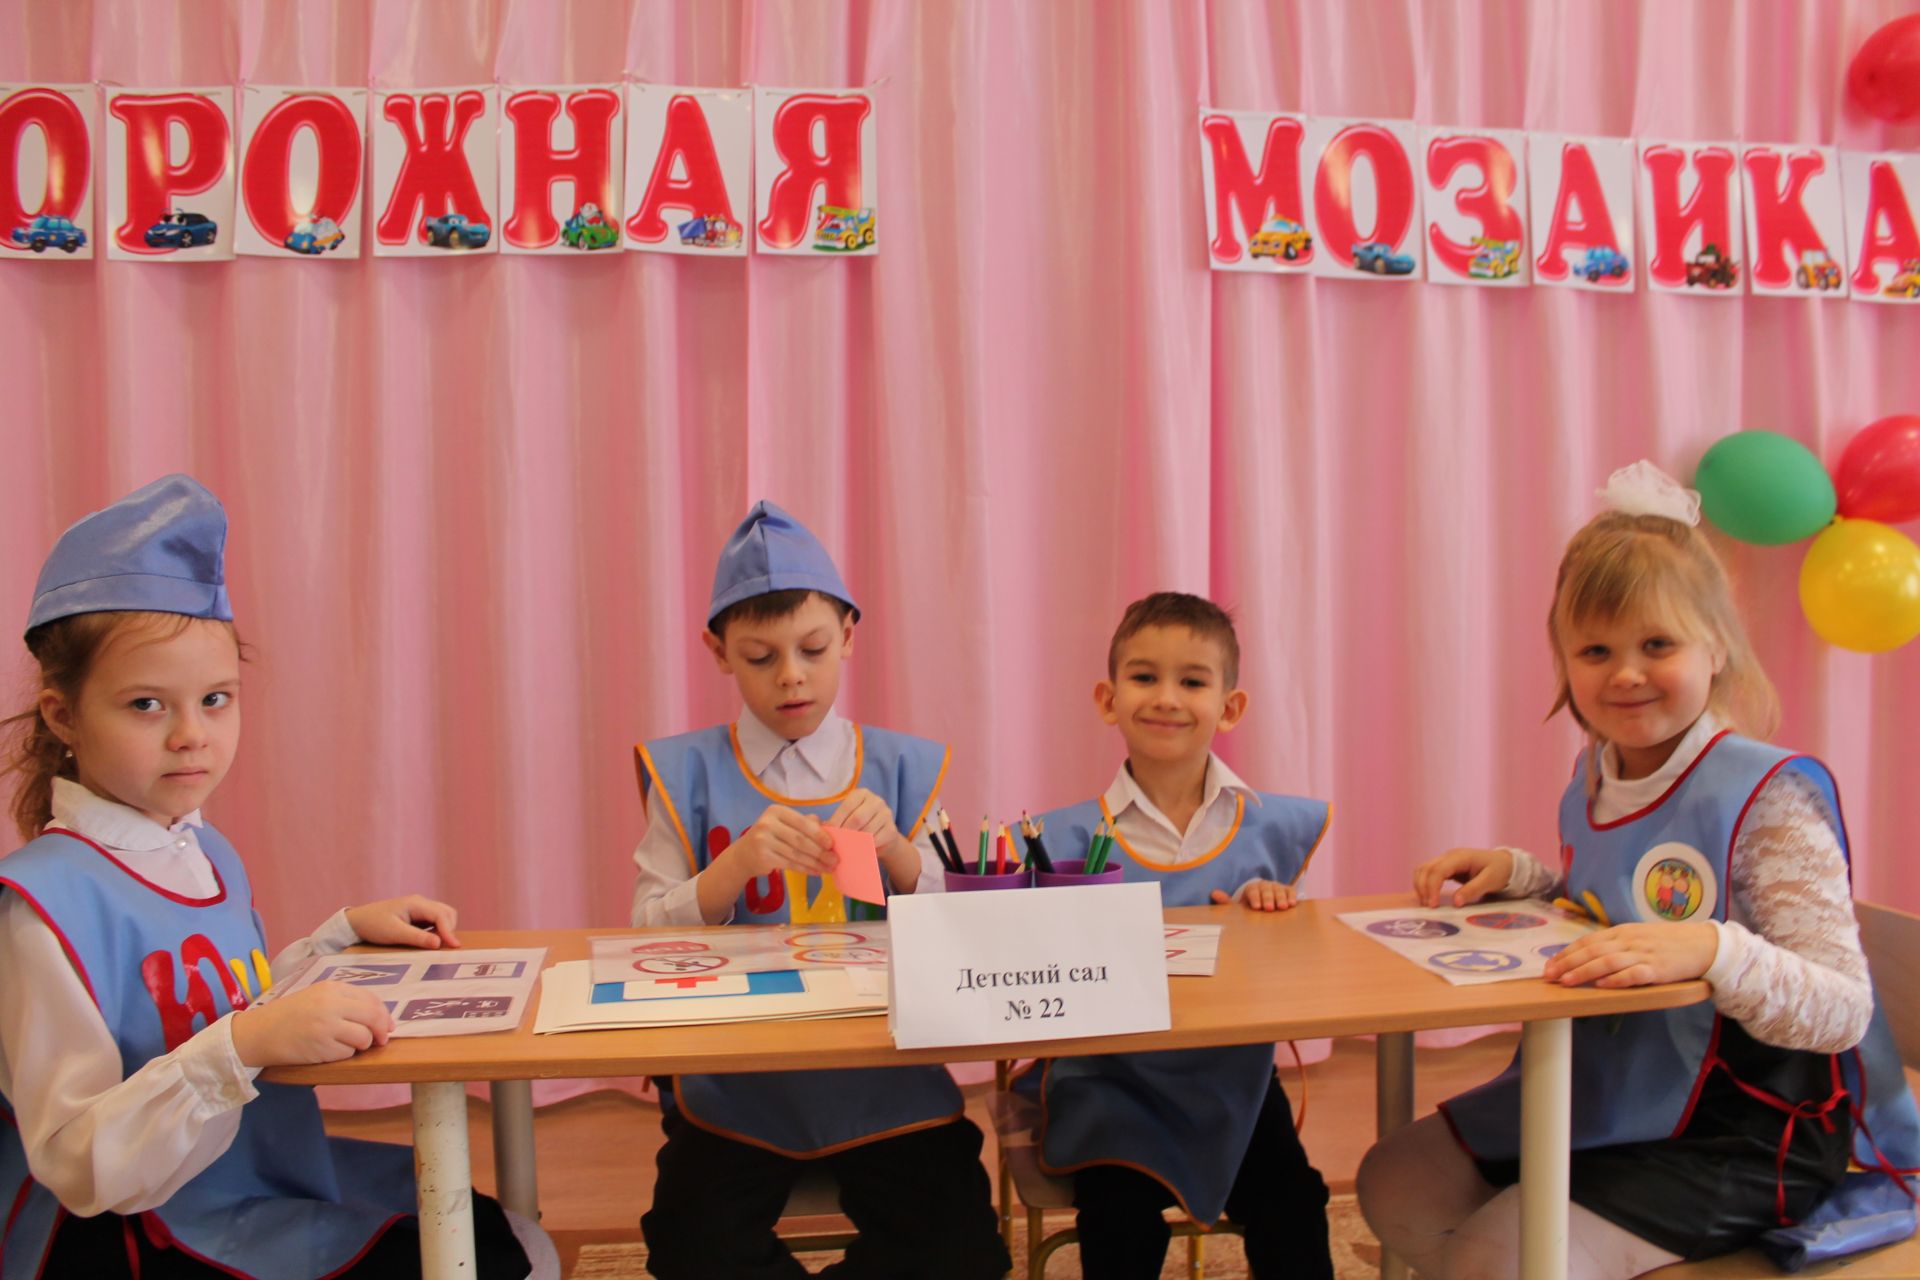 Чистопольские дошколята продолжат борьбу на конкурсе “Дорожная мозаика”. Удачи!